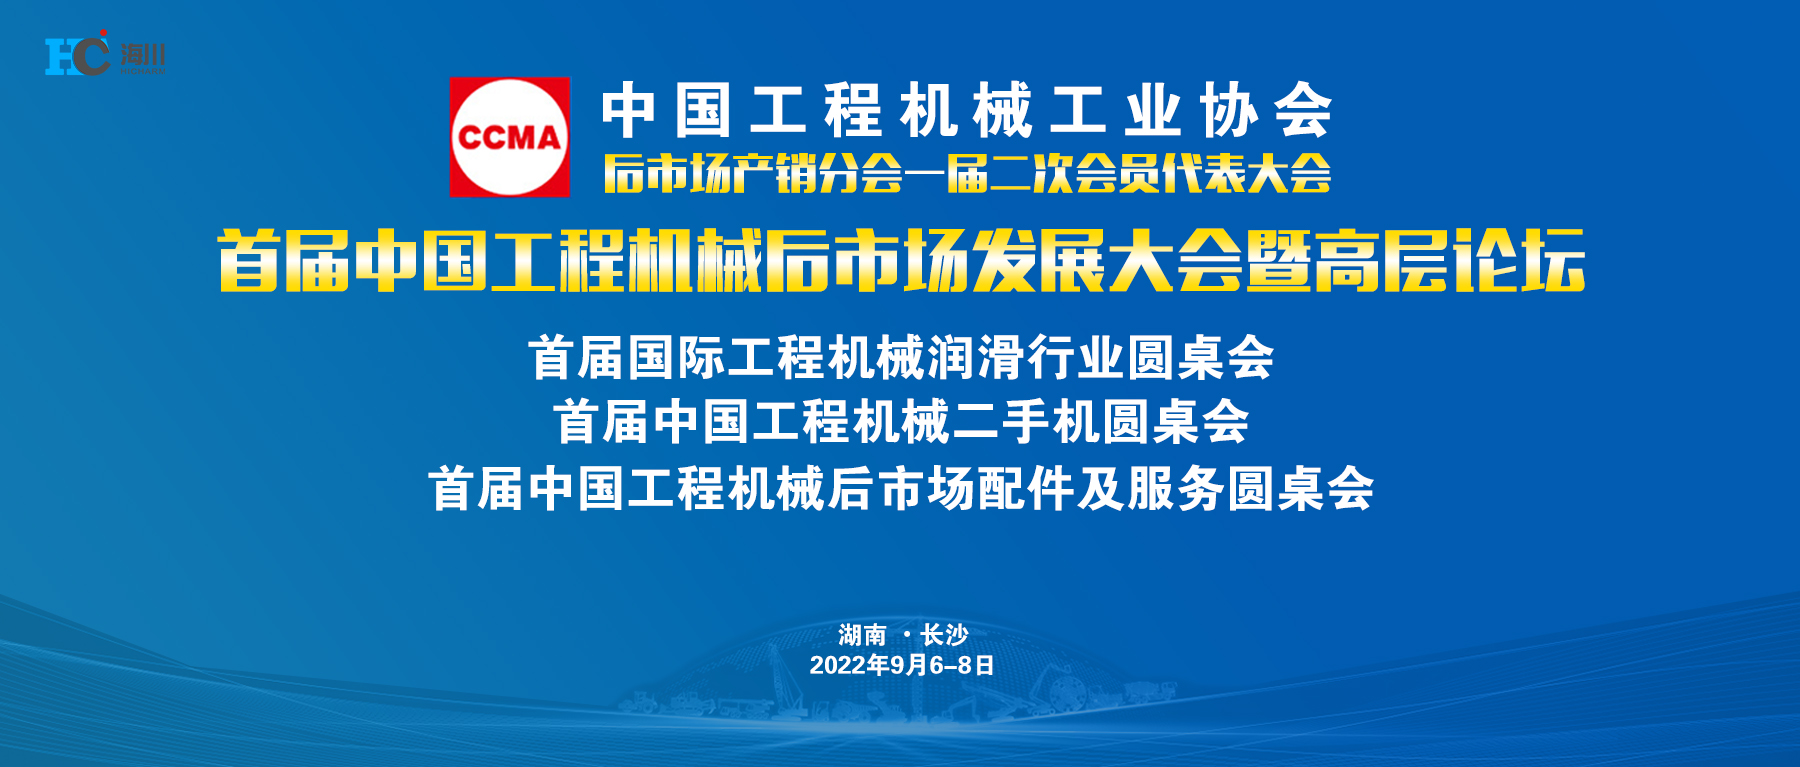 長沙海川參加首屆中國工程機械后市場發展大會暨高層論壇